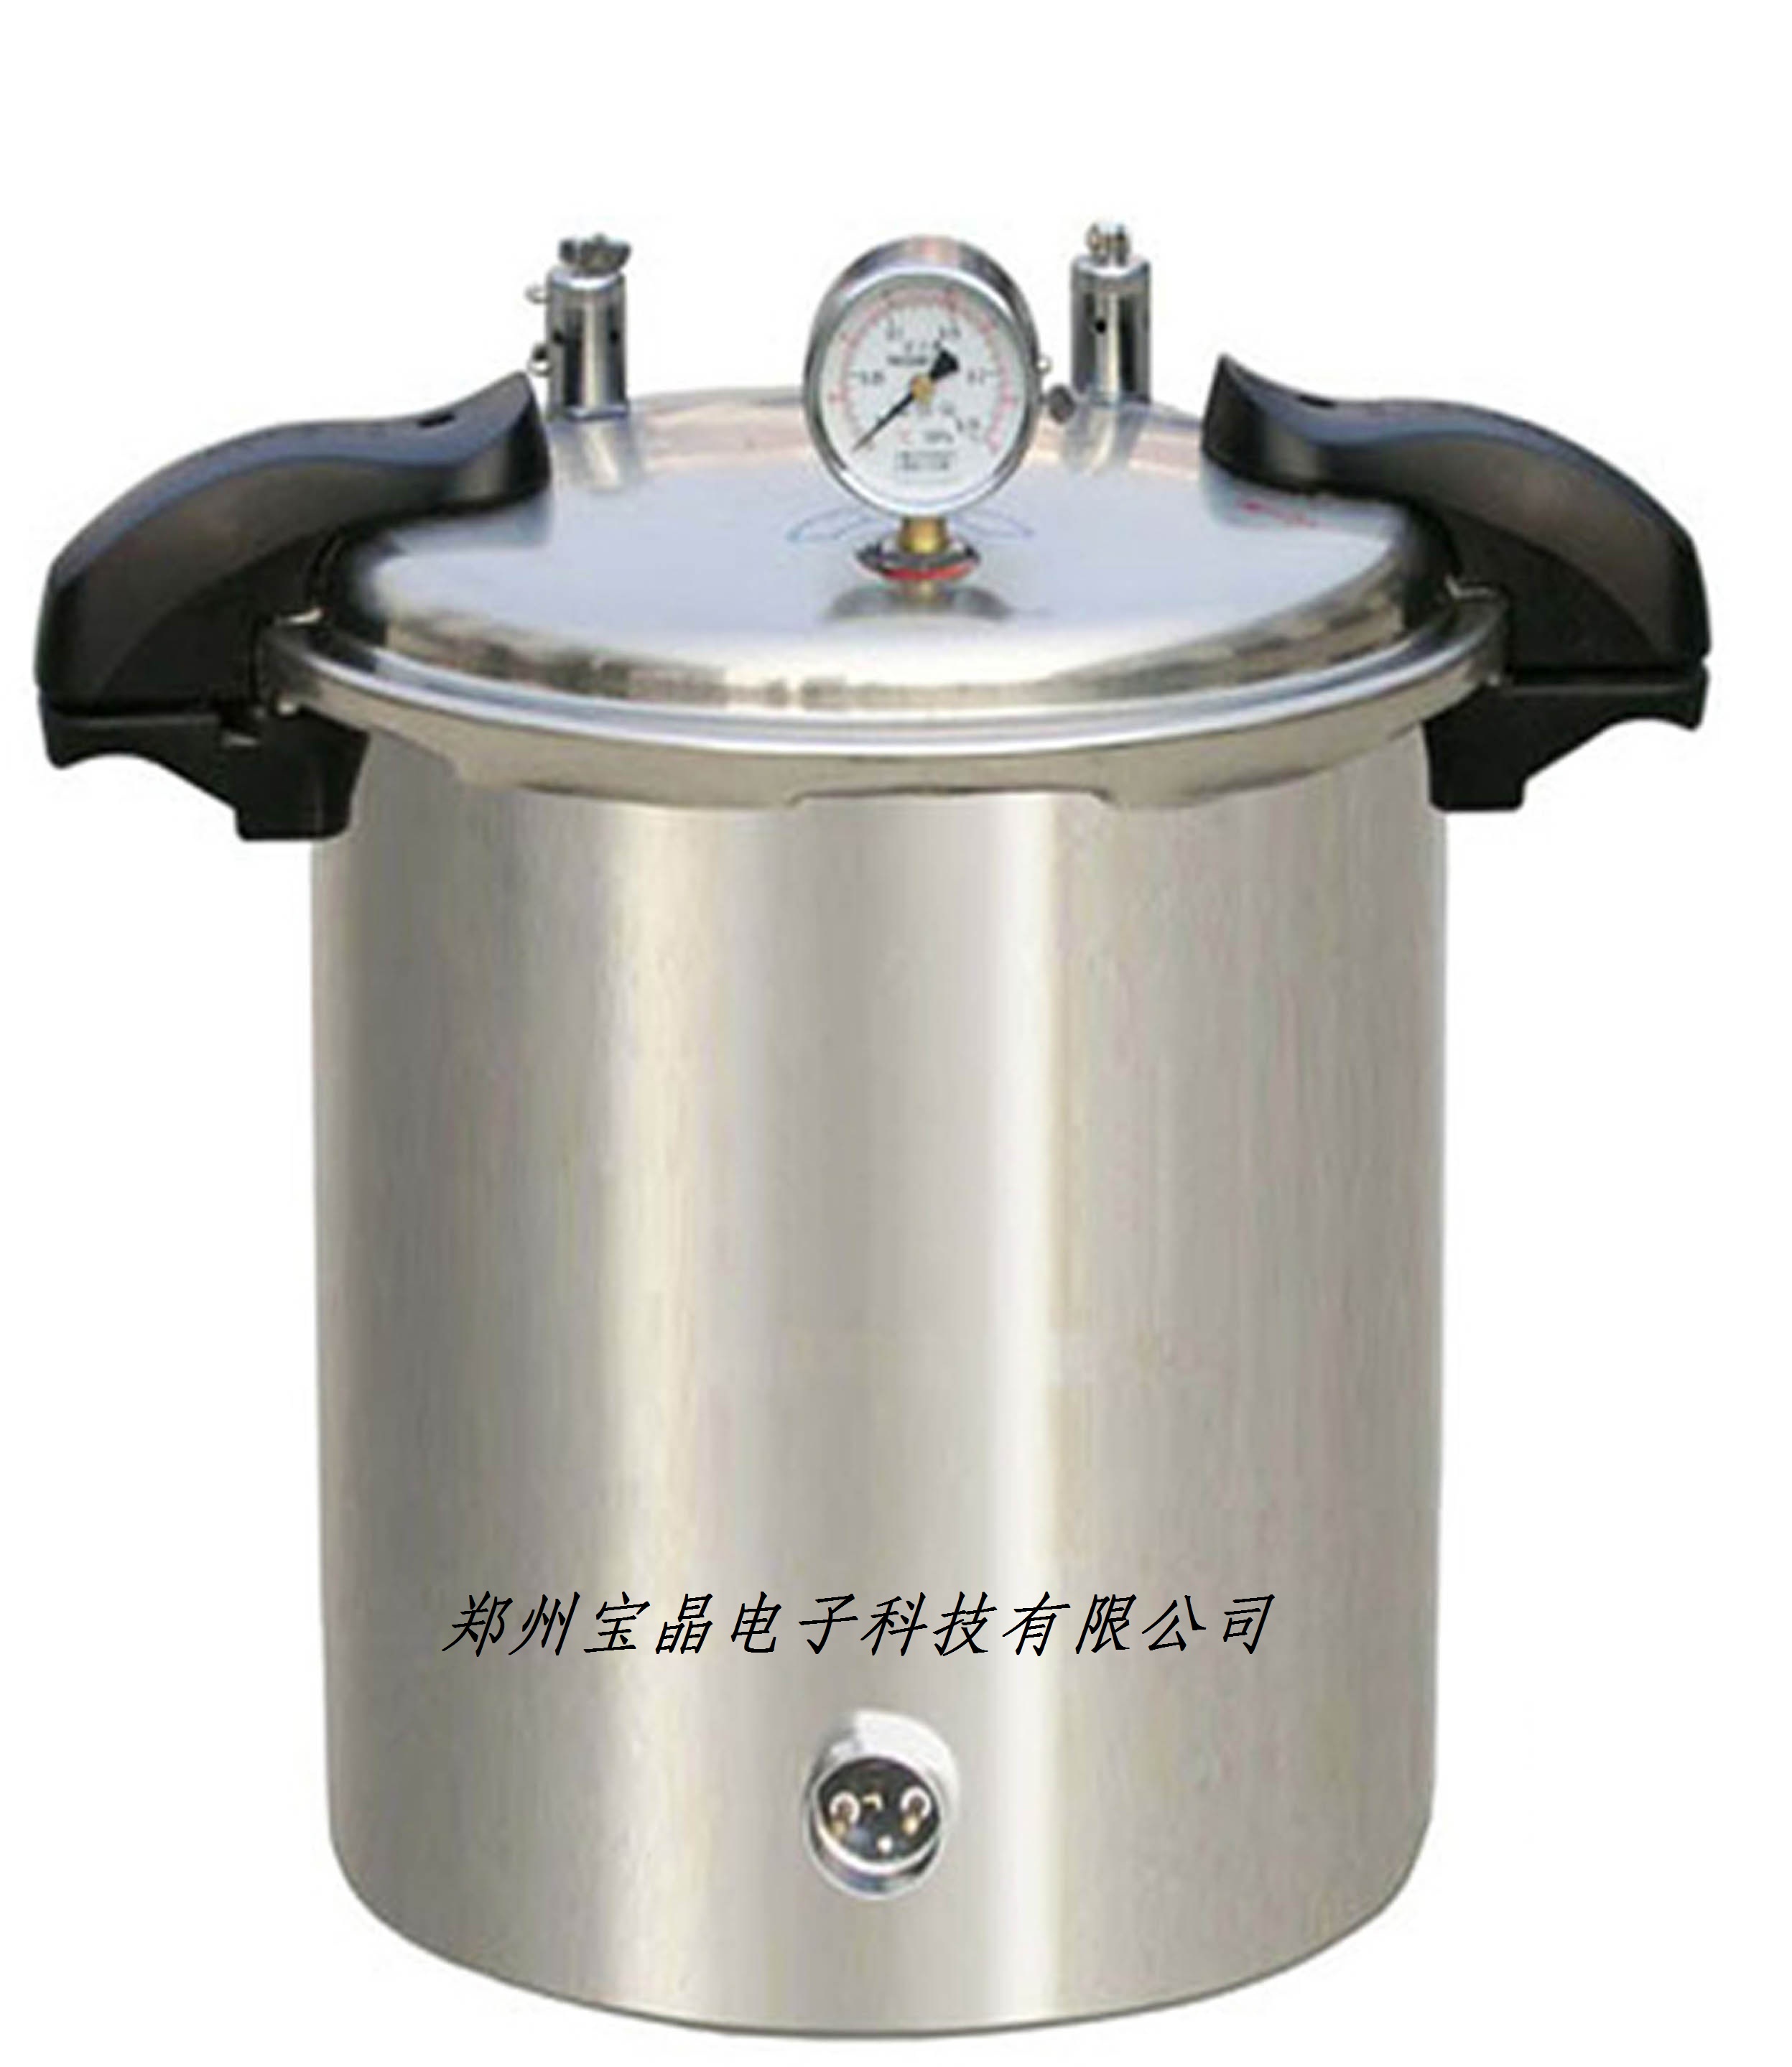 YXQ-SG46-280SA煤电二用手提式灭菌器 高压灭菌器 灭菌器